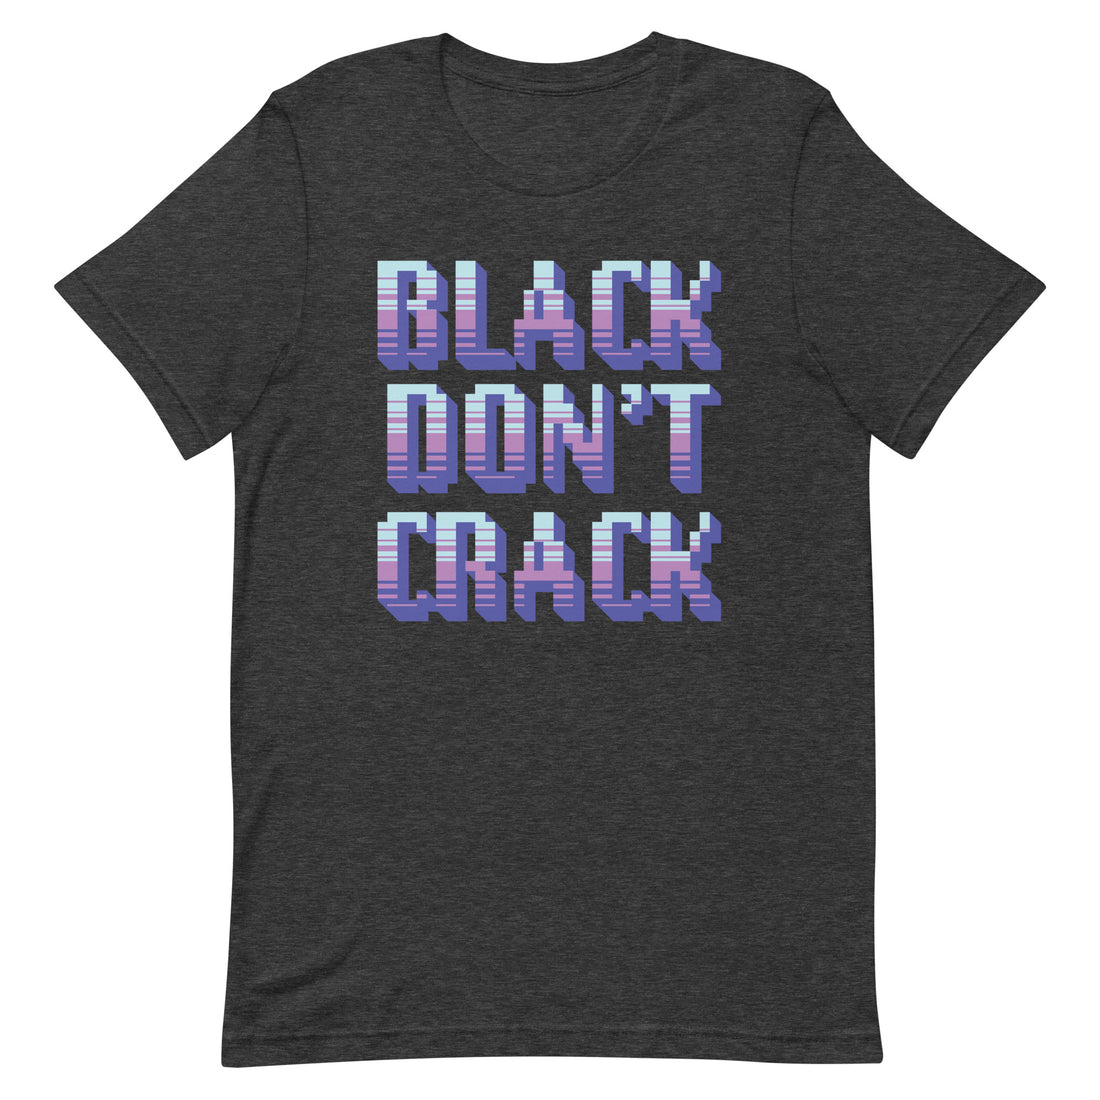 Black Don't Crack